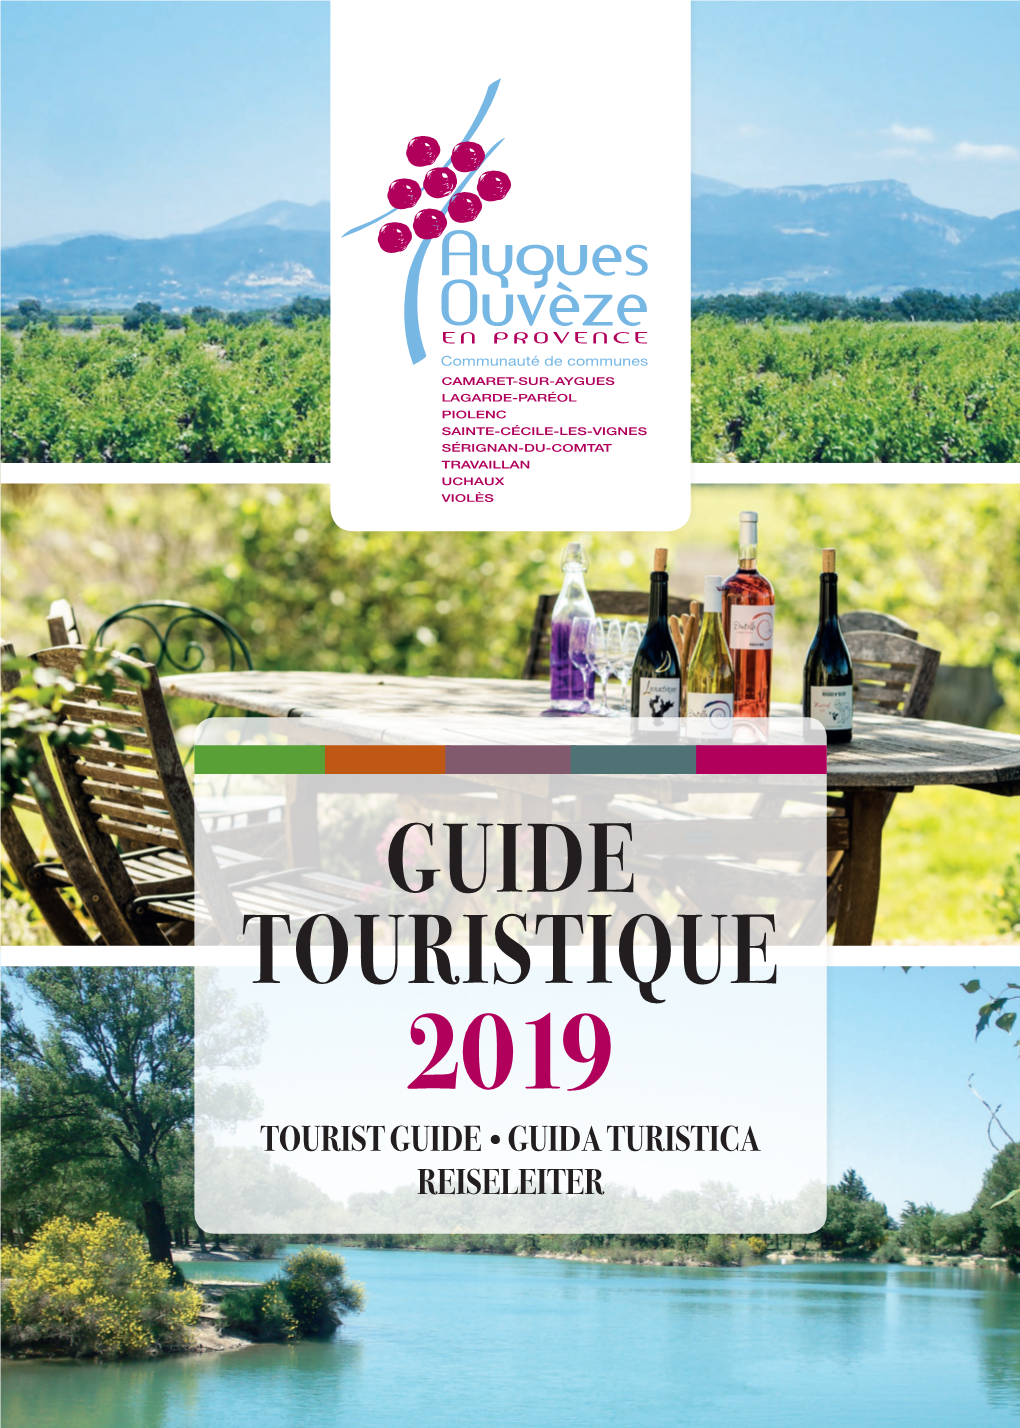 Guide Touristique 2019 Tourist Guide